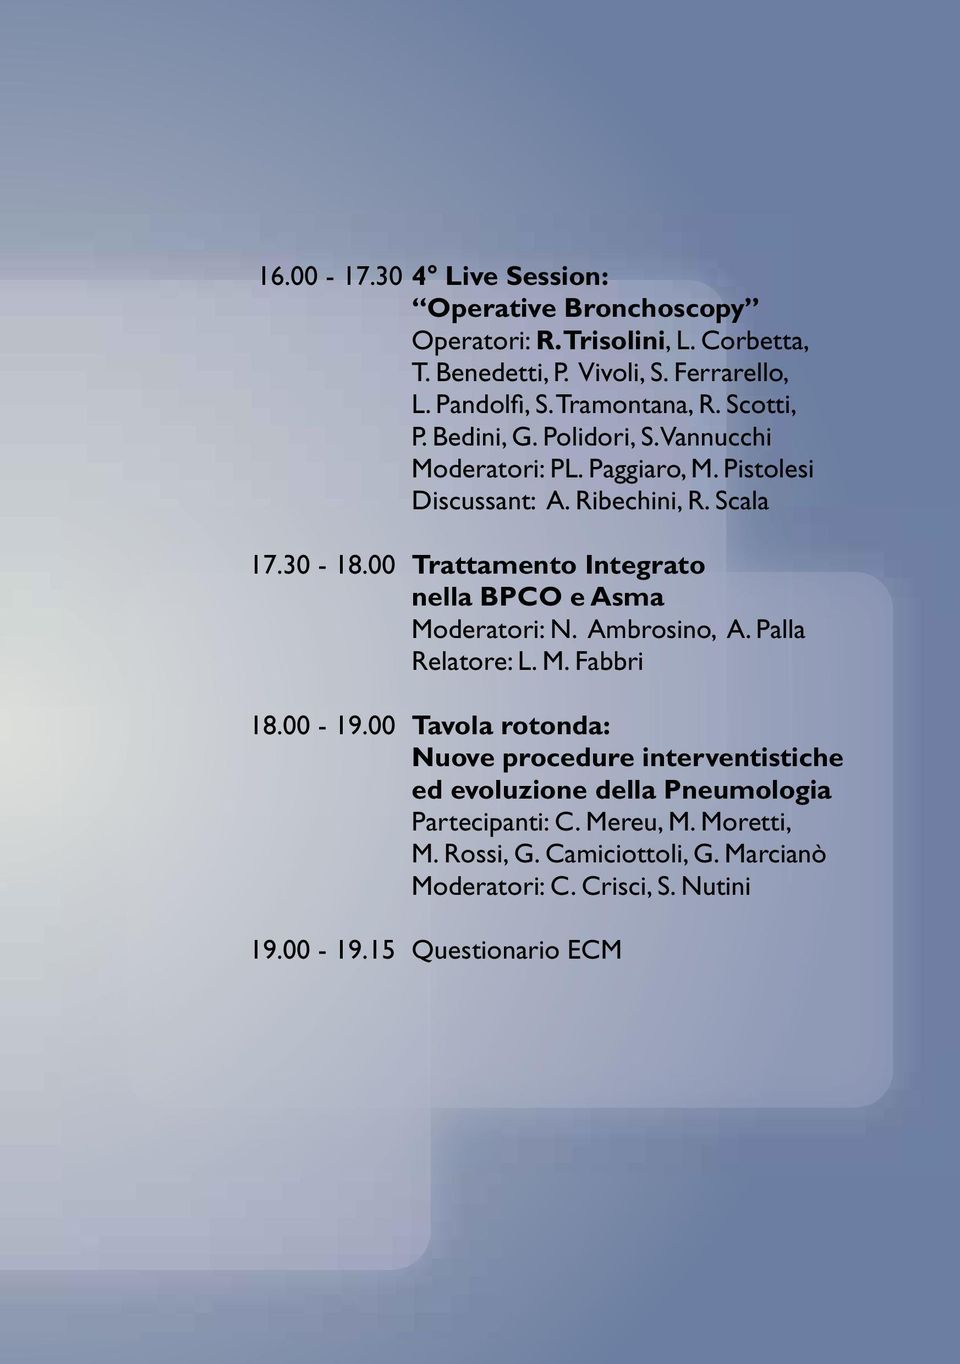 00 Trattamento Integrato nella BPCO e Asma moderatori: N. Ambrosino, A. Palla relatore: L. M. Fabbri 18.00-19.